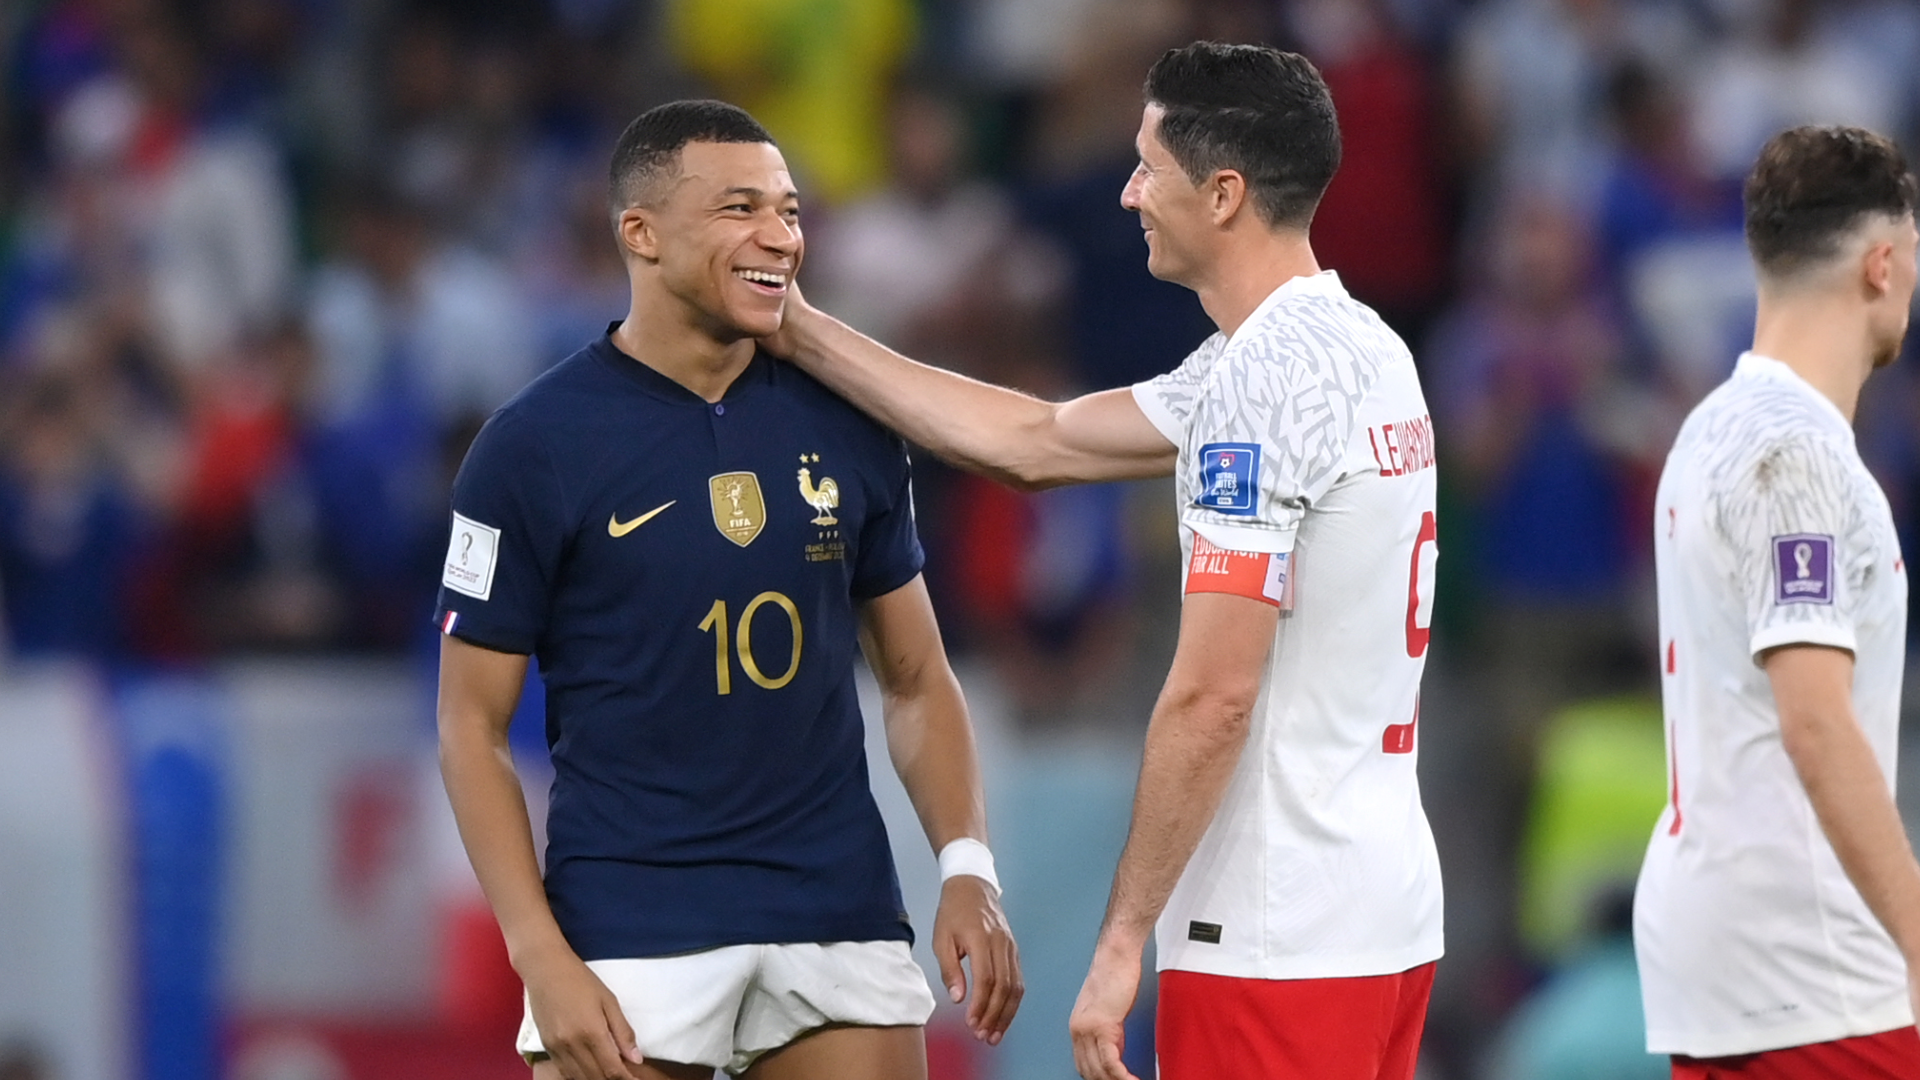 Mecz Francja-Polska na Mistrzostwach Świata, który poruszył media społecznościowe